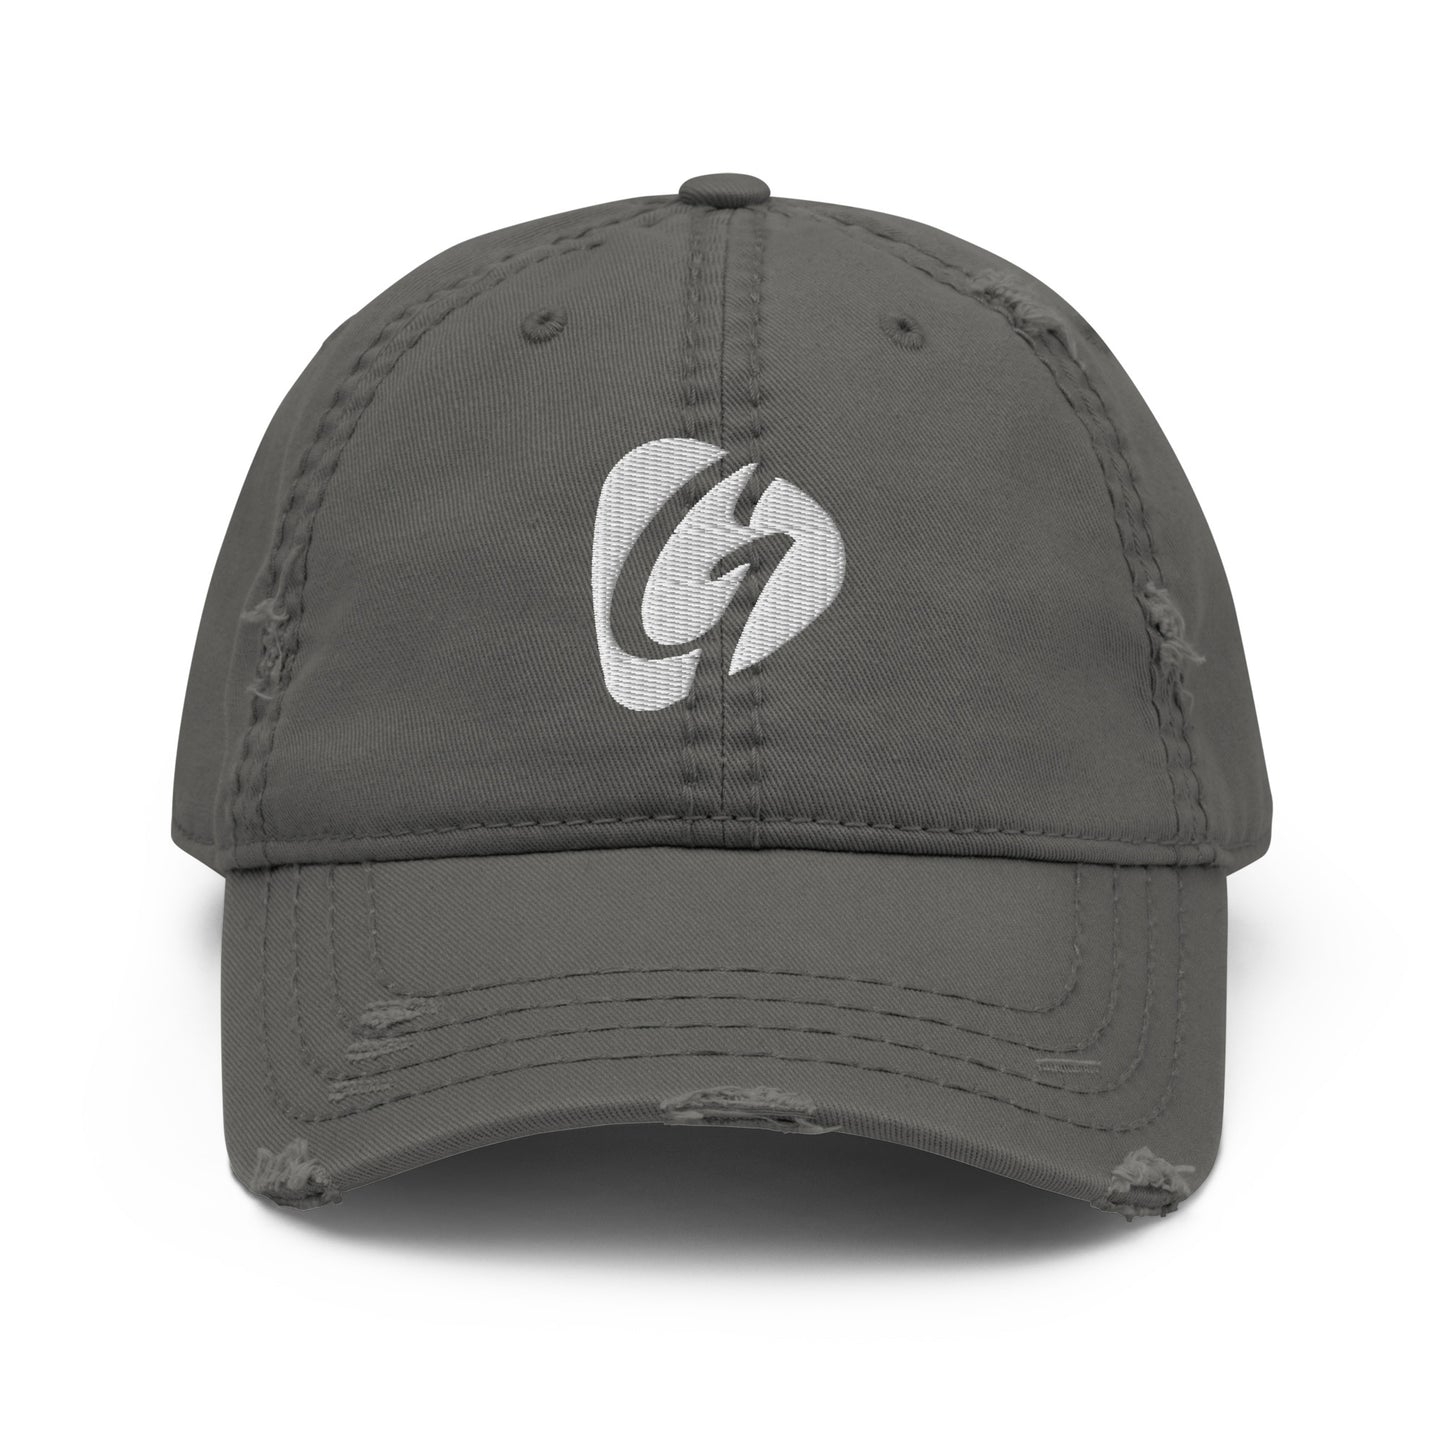 Distressed Gatekeeper G logo hat